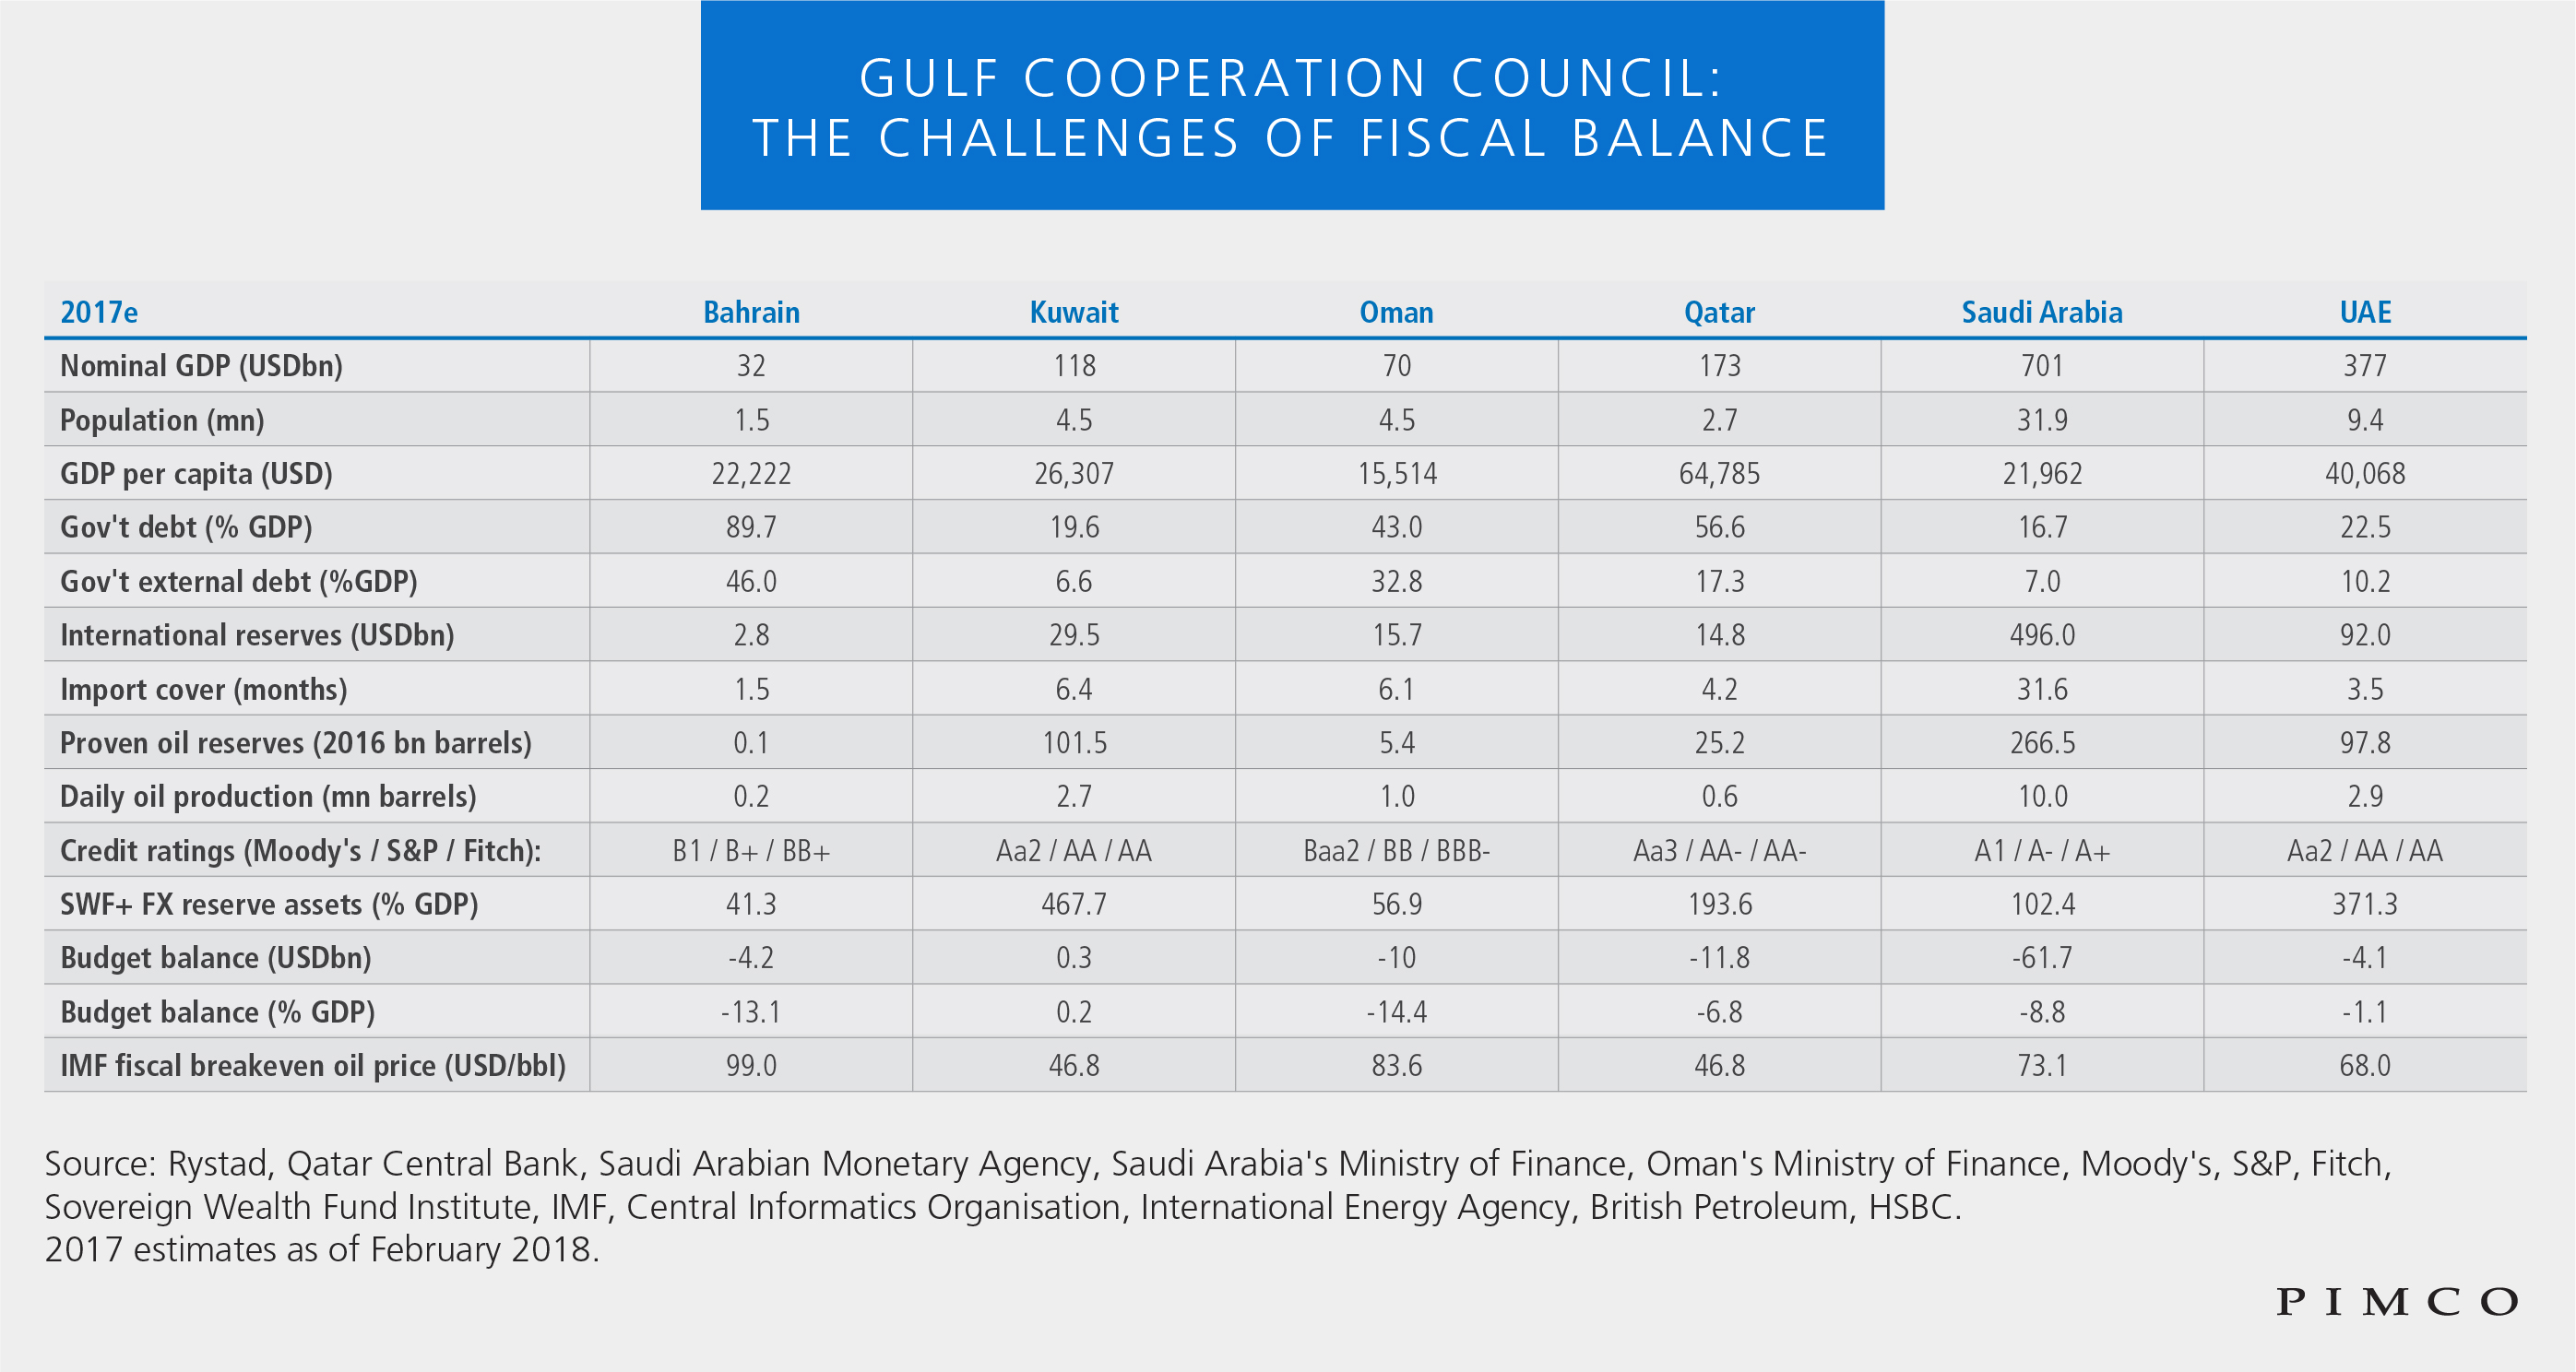 Golf-Kooperationsrat: die Schwierigkeiten eines fiskalischen Gleichgewichts